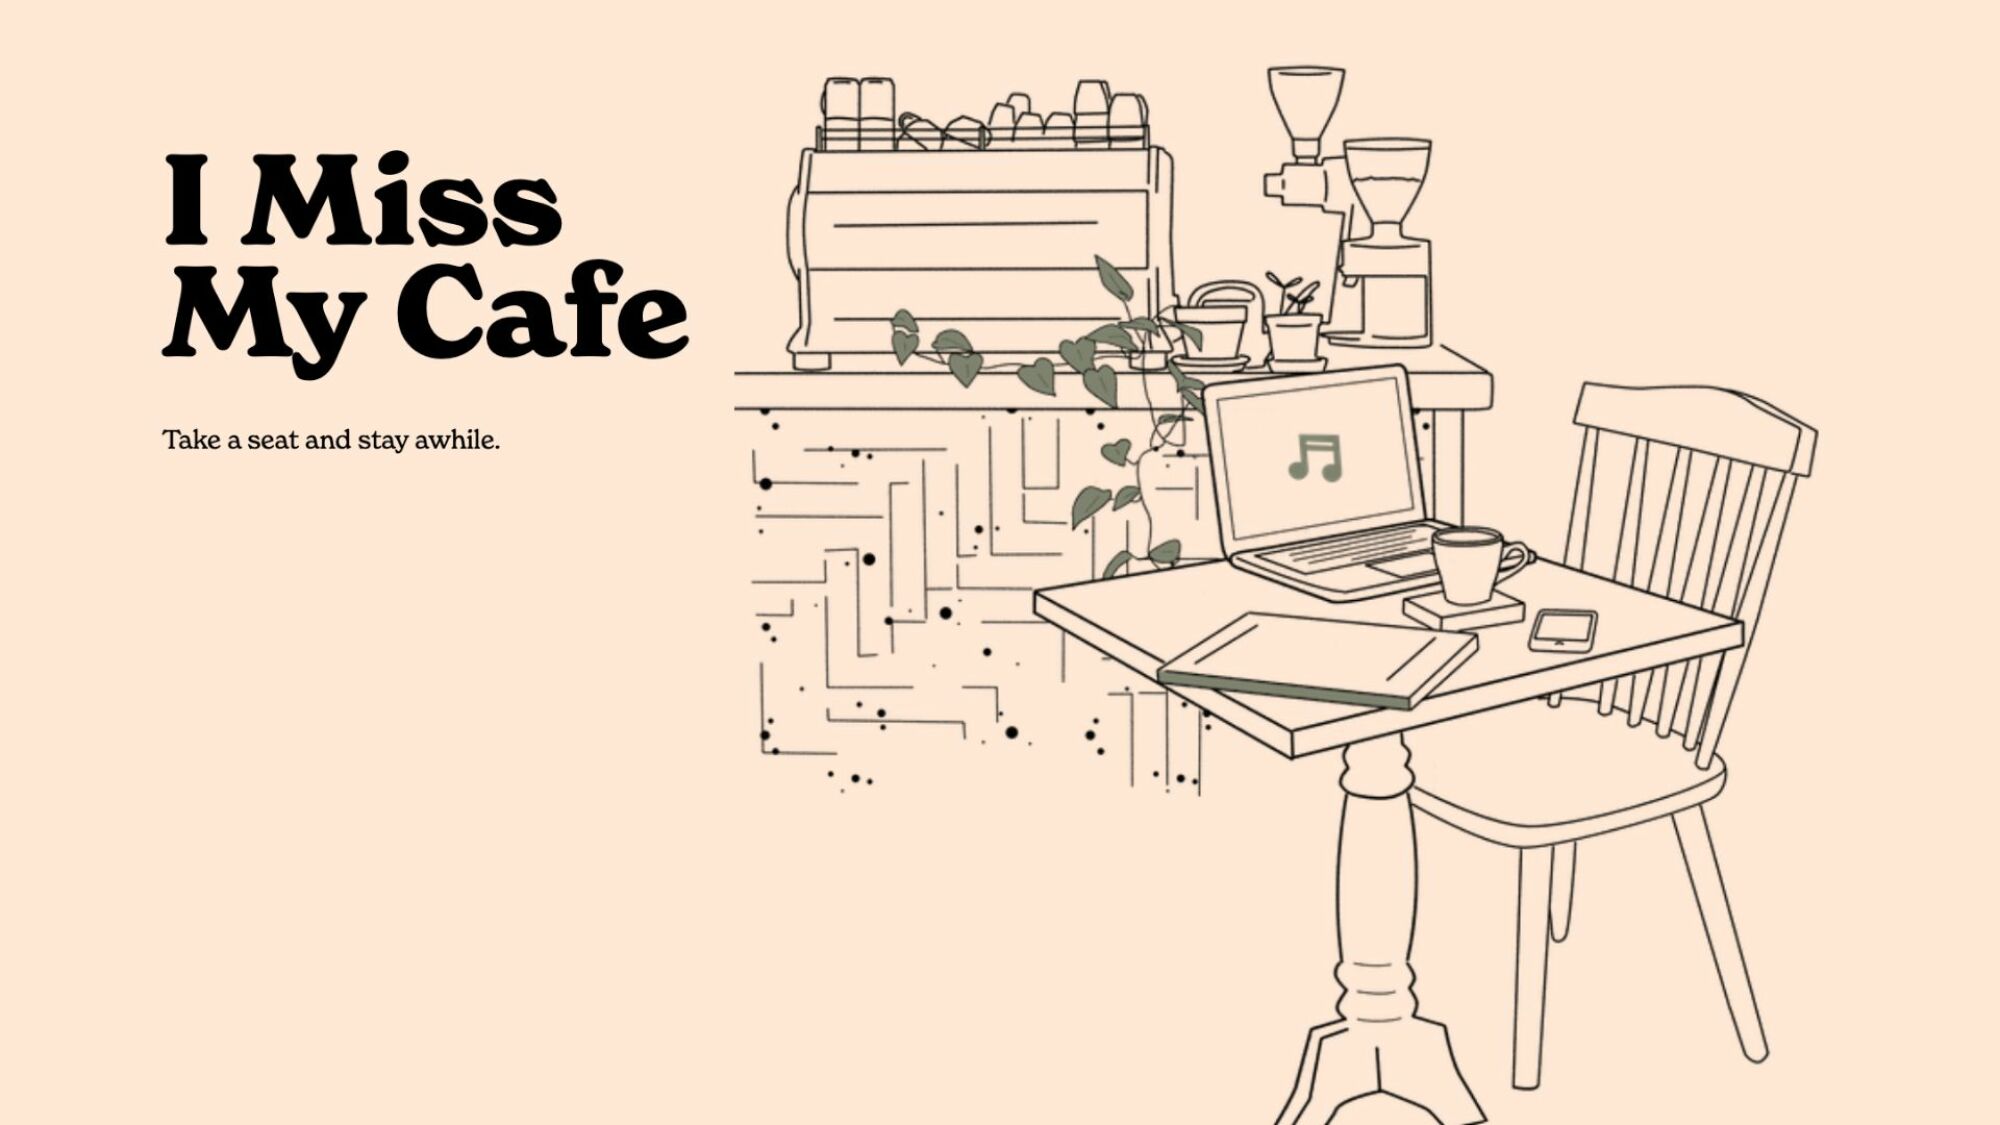 La page d’accueil de IMissMyCafe.com.  Un dessin au trait d’une table et d’une chaise avec un ordinateur portable ouvert dessus.  Derrière cela se trouve un bar barista.